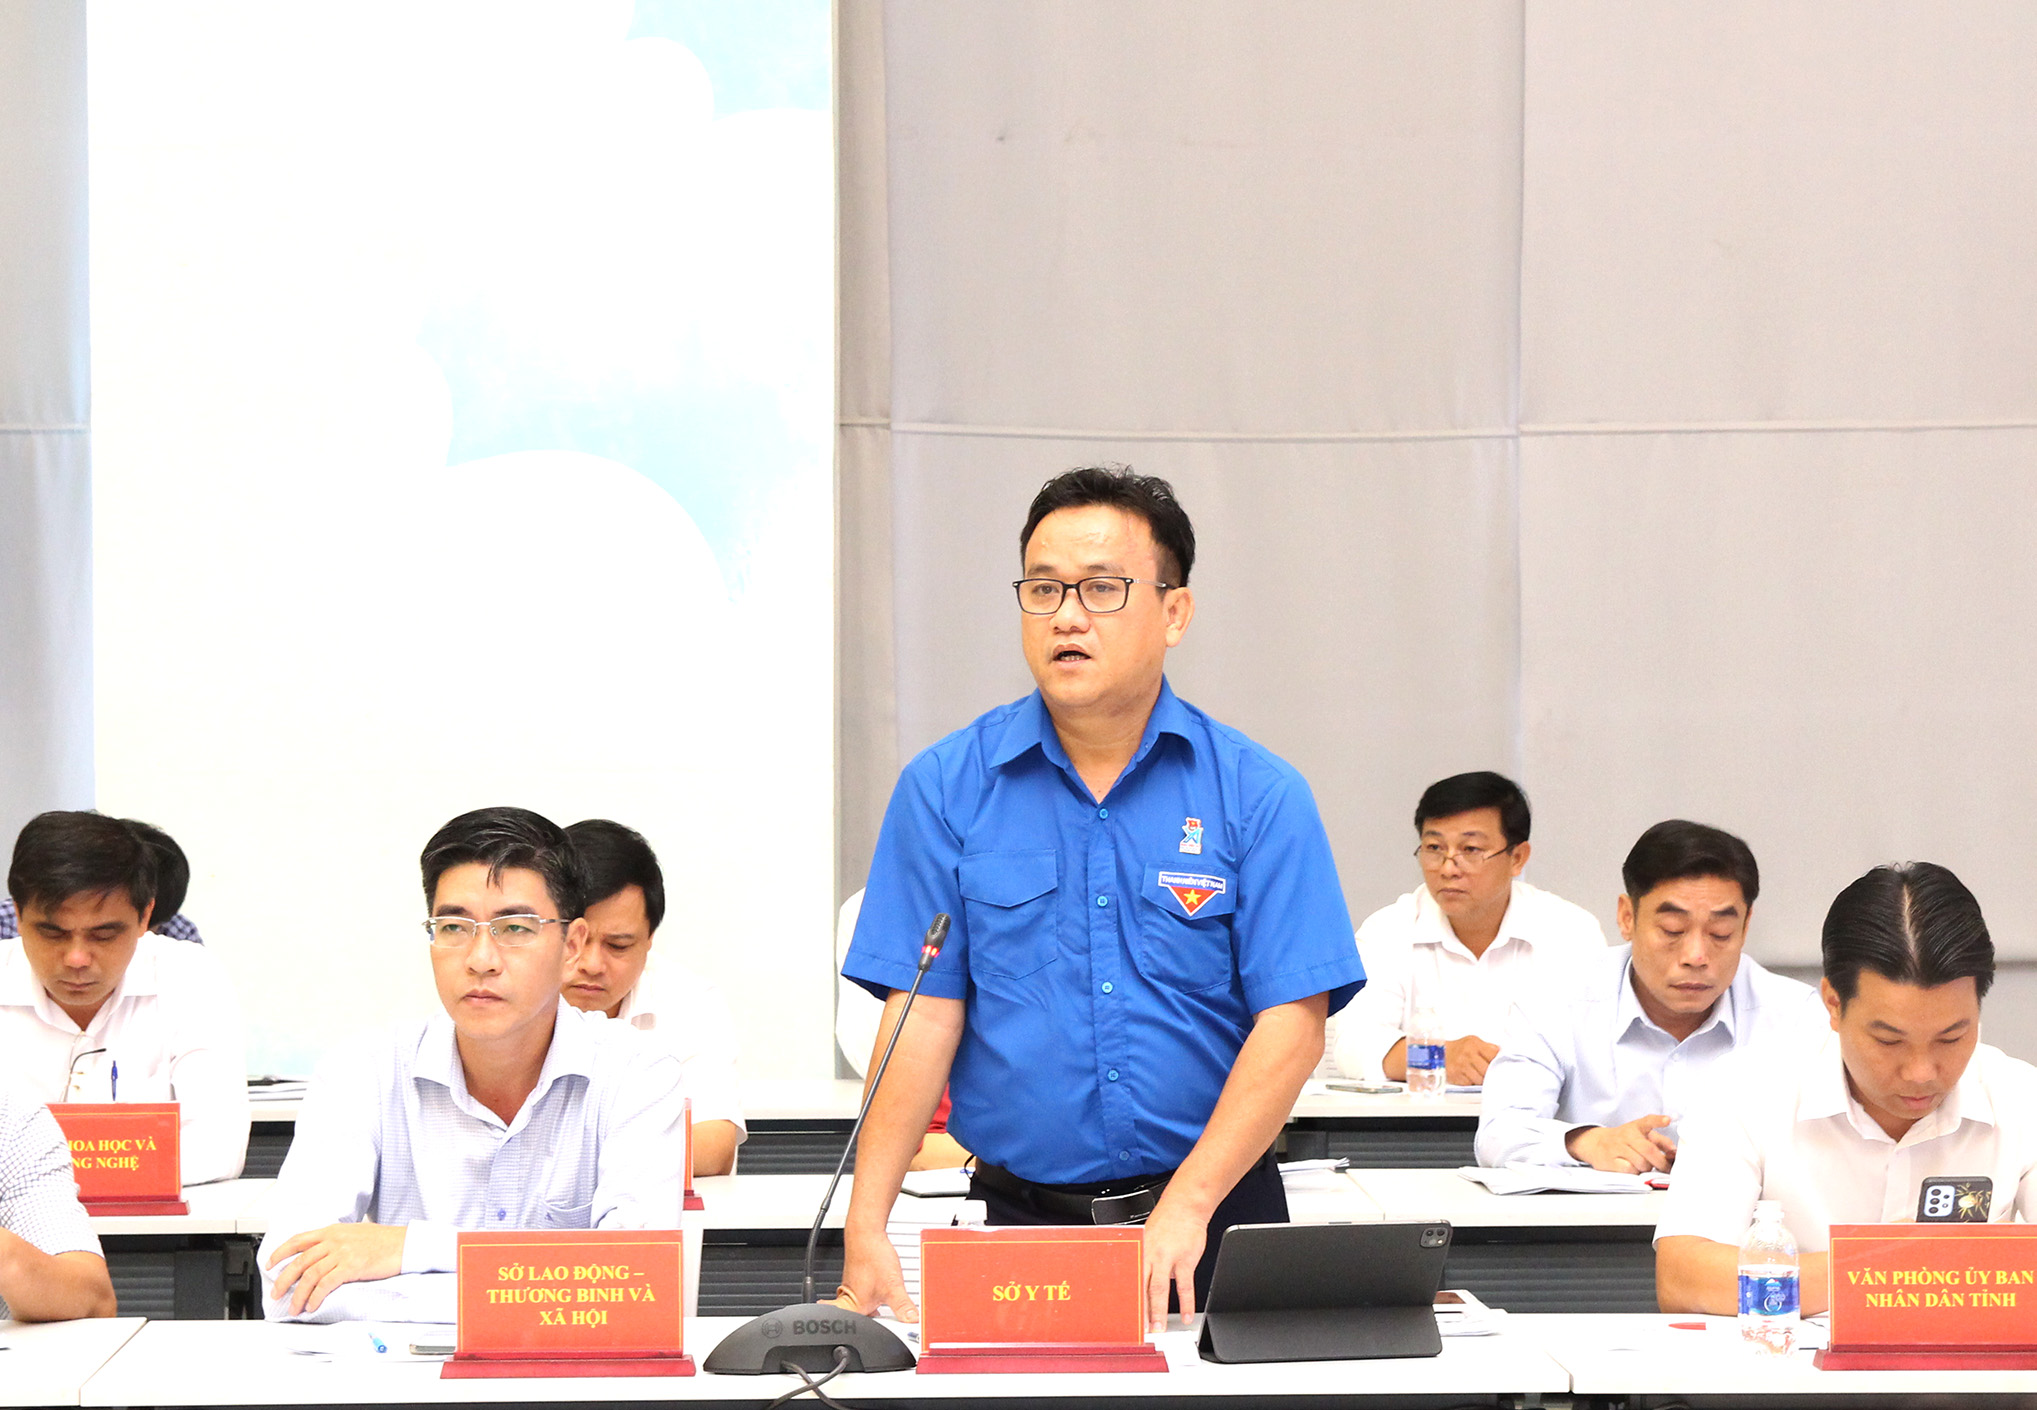 Đồng chí Huỳnh Minh Chín, Phó Giám đốc Sở Y tế phát biểu tại buổi họp báo (Ảnh: H.hào)